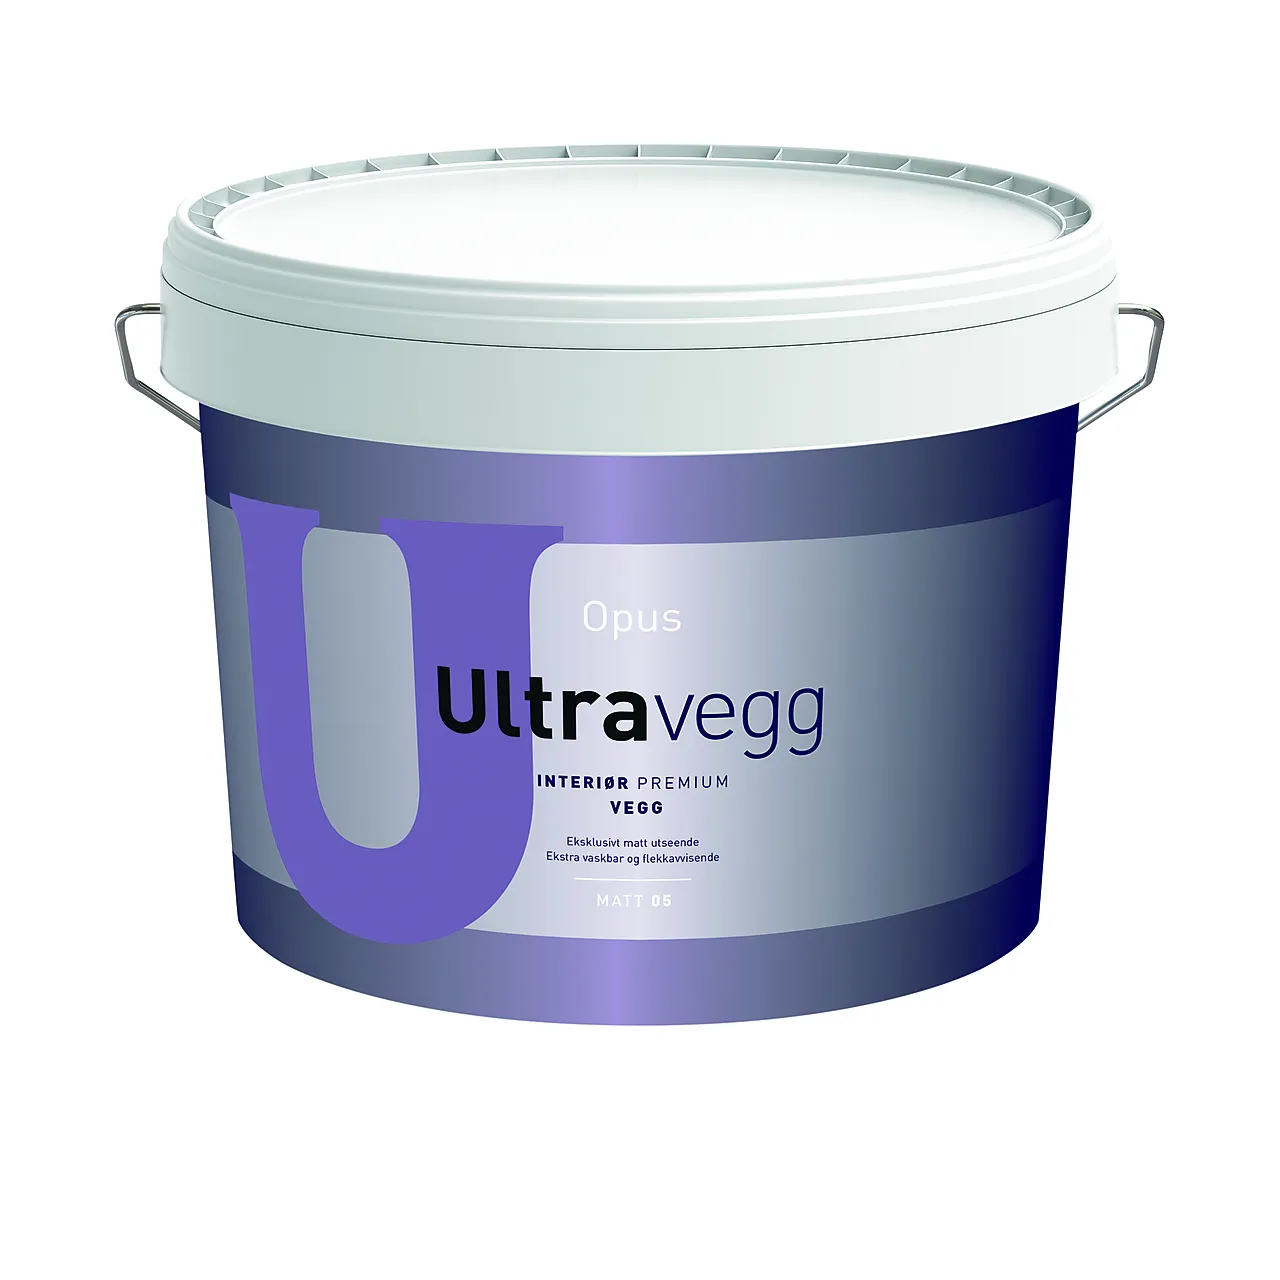 Opus ultravegg 05 base a 9l matt akrylmaling med glansgrad 05